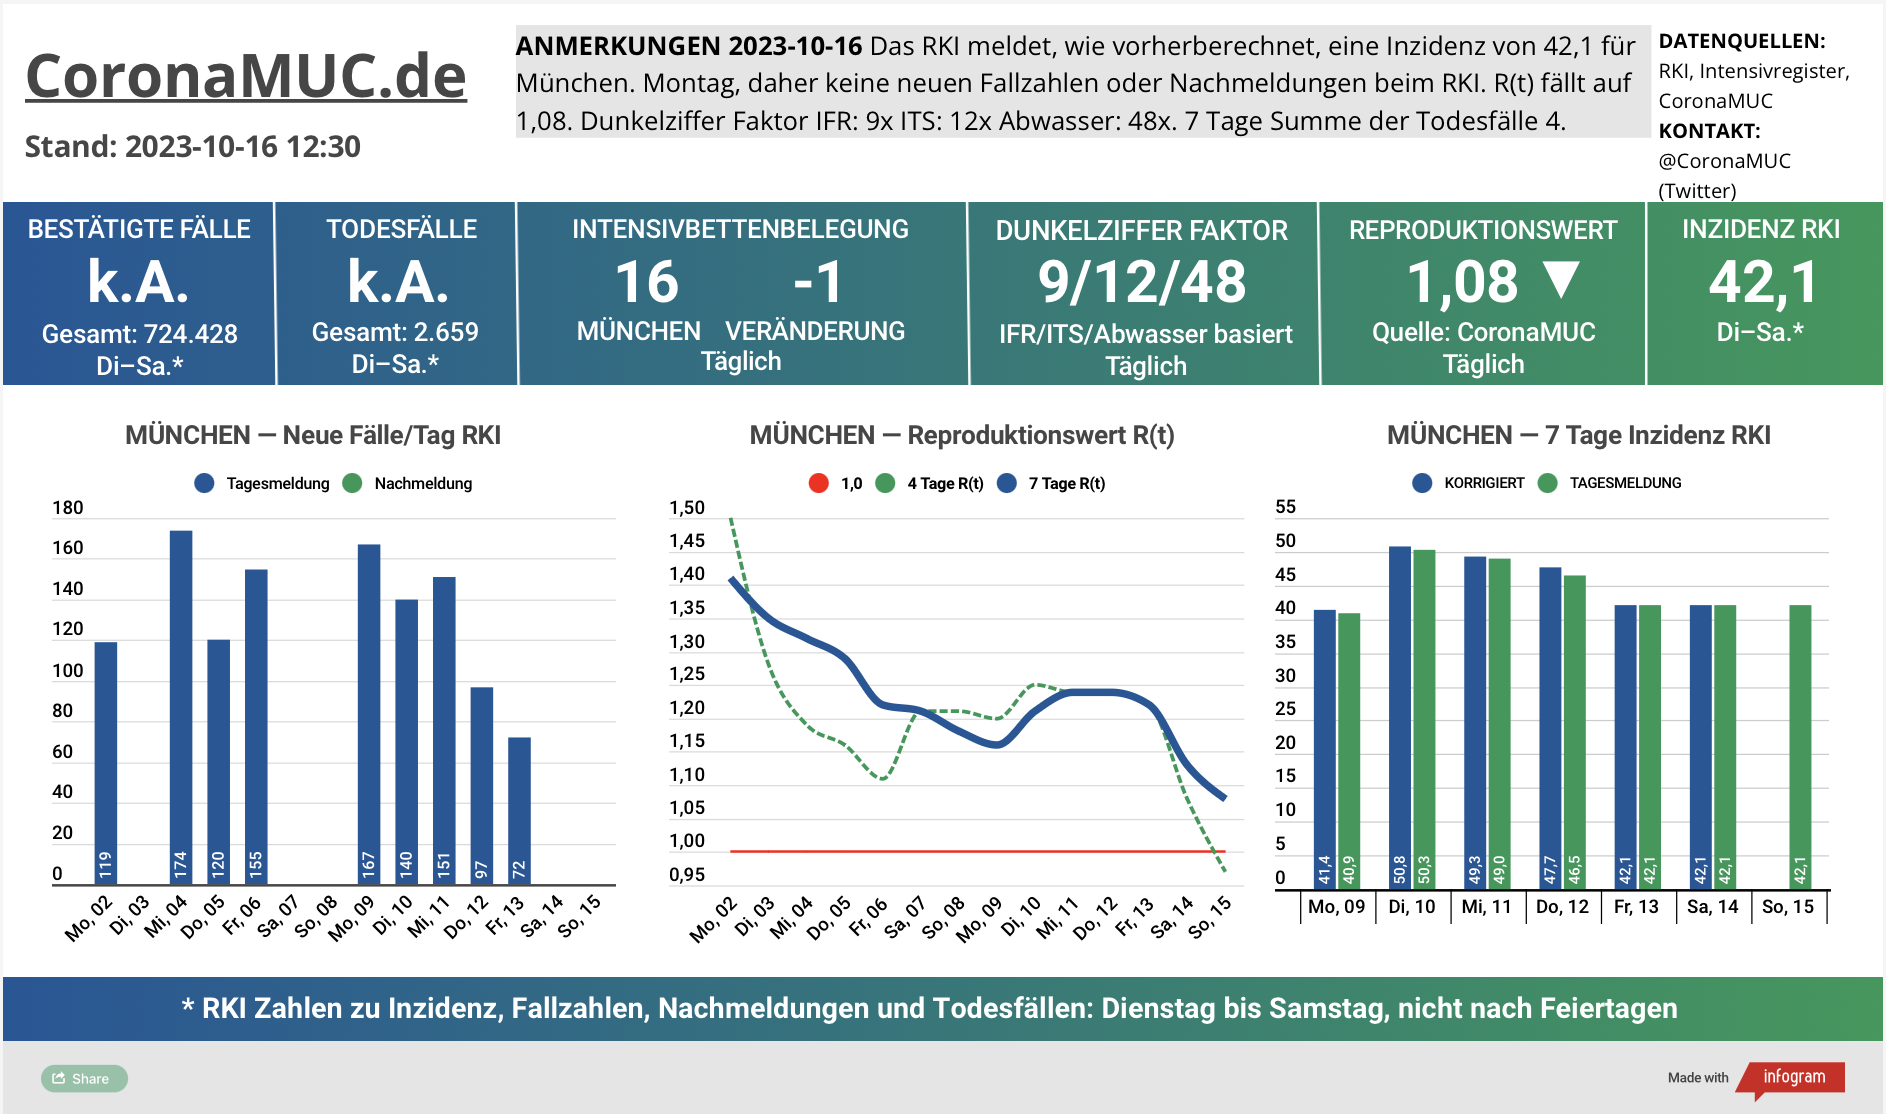 2023-10-16 Dashboard mit den Zahlen für München. Drei Graphen. Erste zeigt Neu- und Nachmeldungen, unklare Tendenz. Zweite zeigt R(t) Wert für München, der auf 1,11 sinkt. Dritte zeigt Inzidenz, die jetzt unter 50 liegt, trotz kaum noch gemachten PCR Tests.